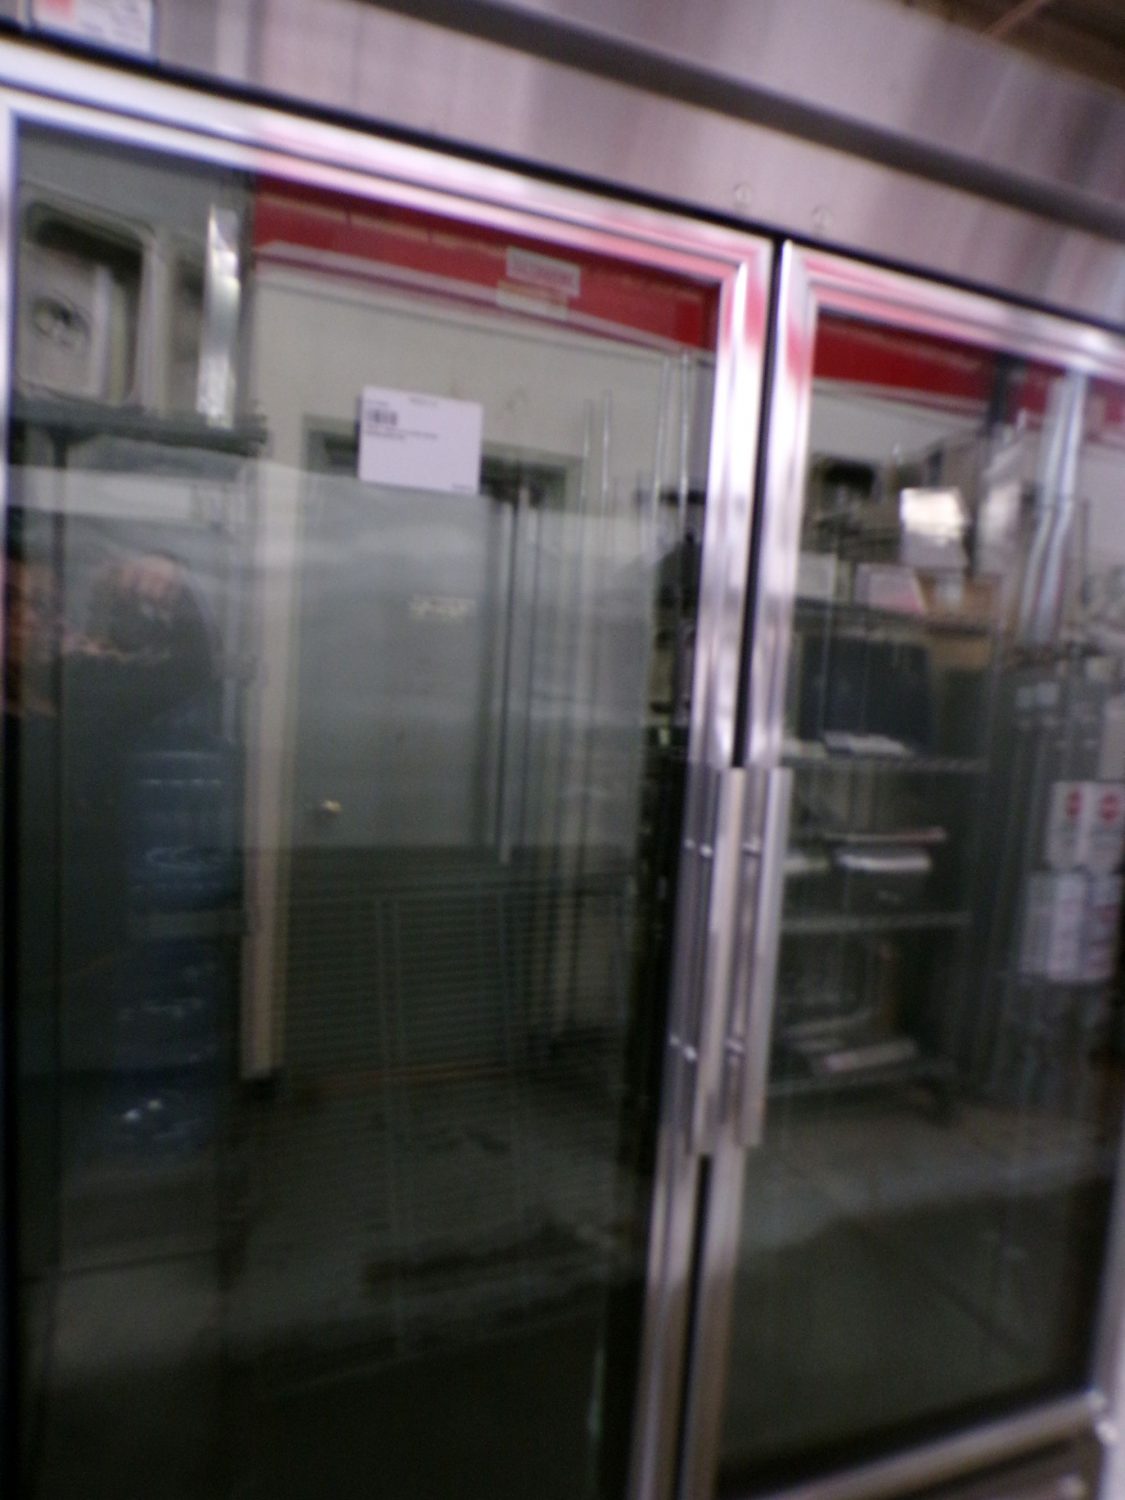 True Glass Door Refrigerator